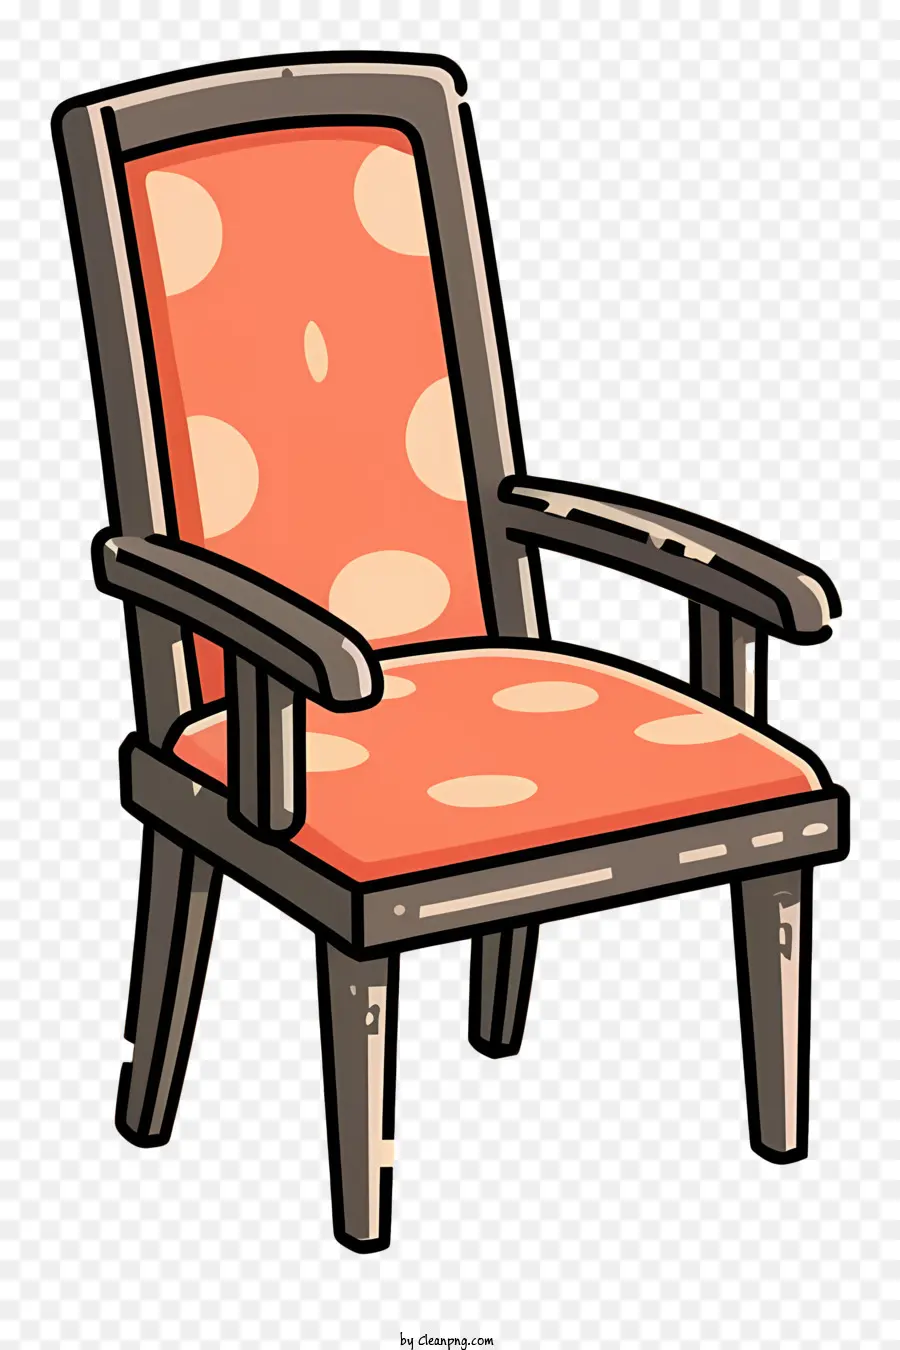 Holzrahmen - Orange und schwarzer Polka -Dot -Sessel, 2D -Darstellung